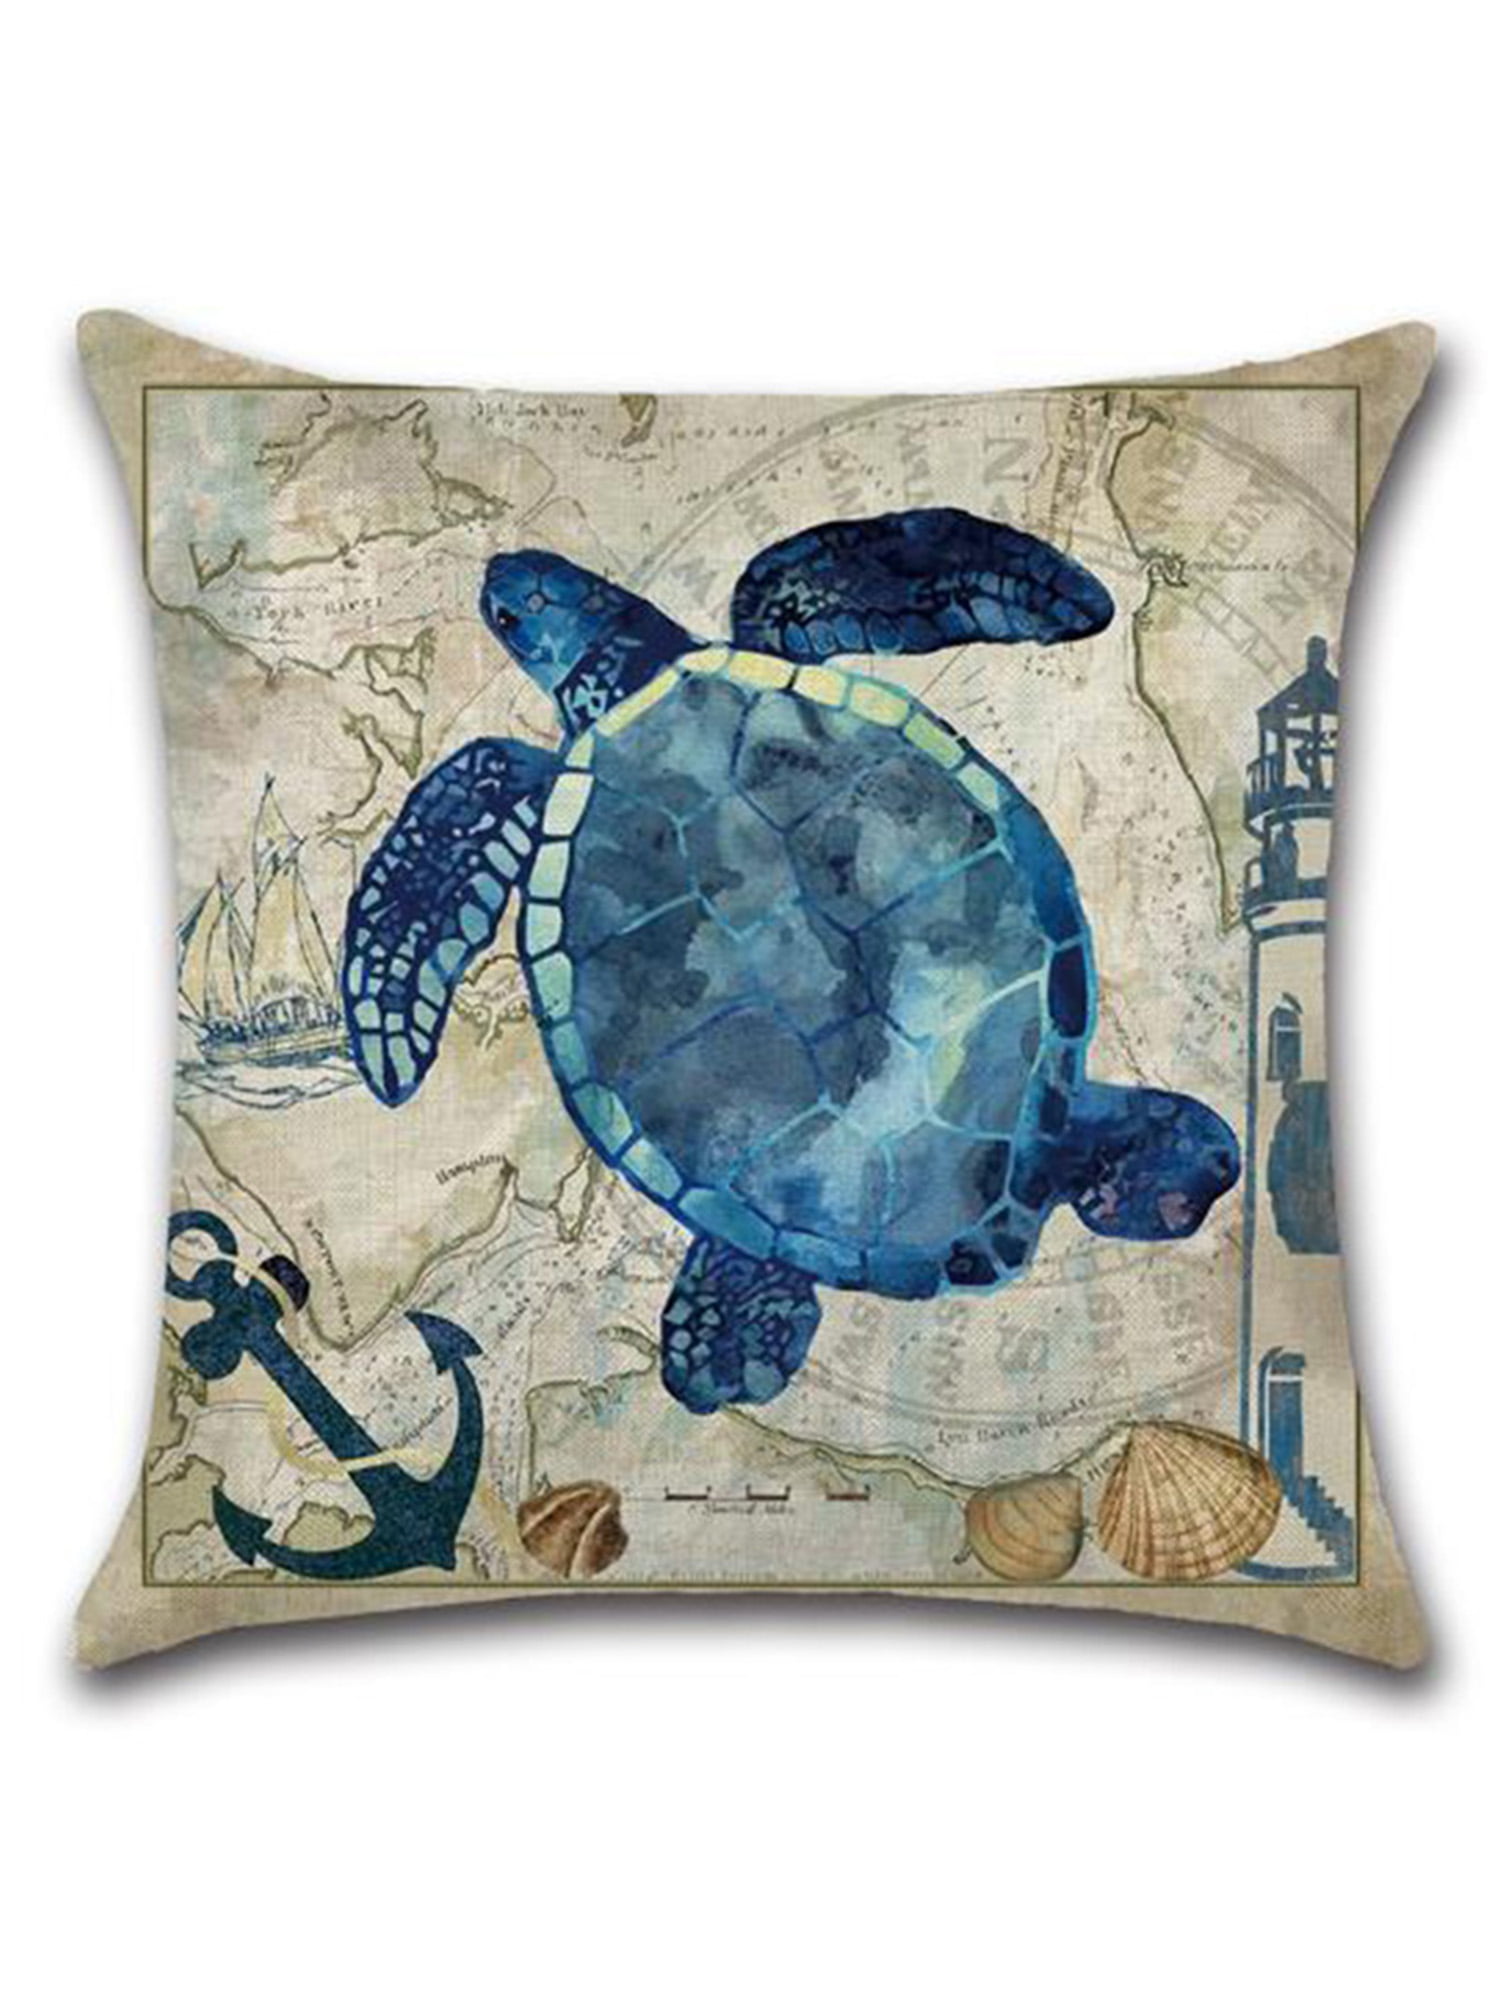 ocean marine nautical mermaid cushion cover couch decorative pillows US SELLER